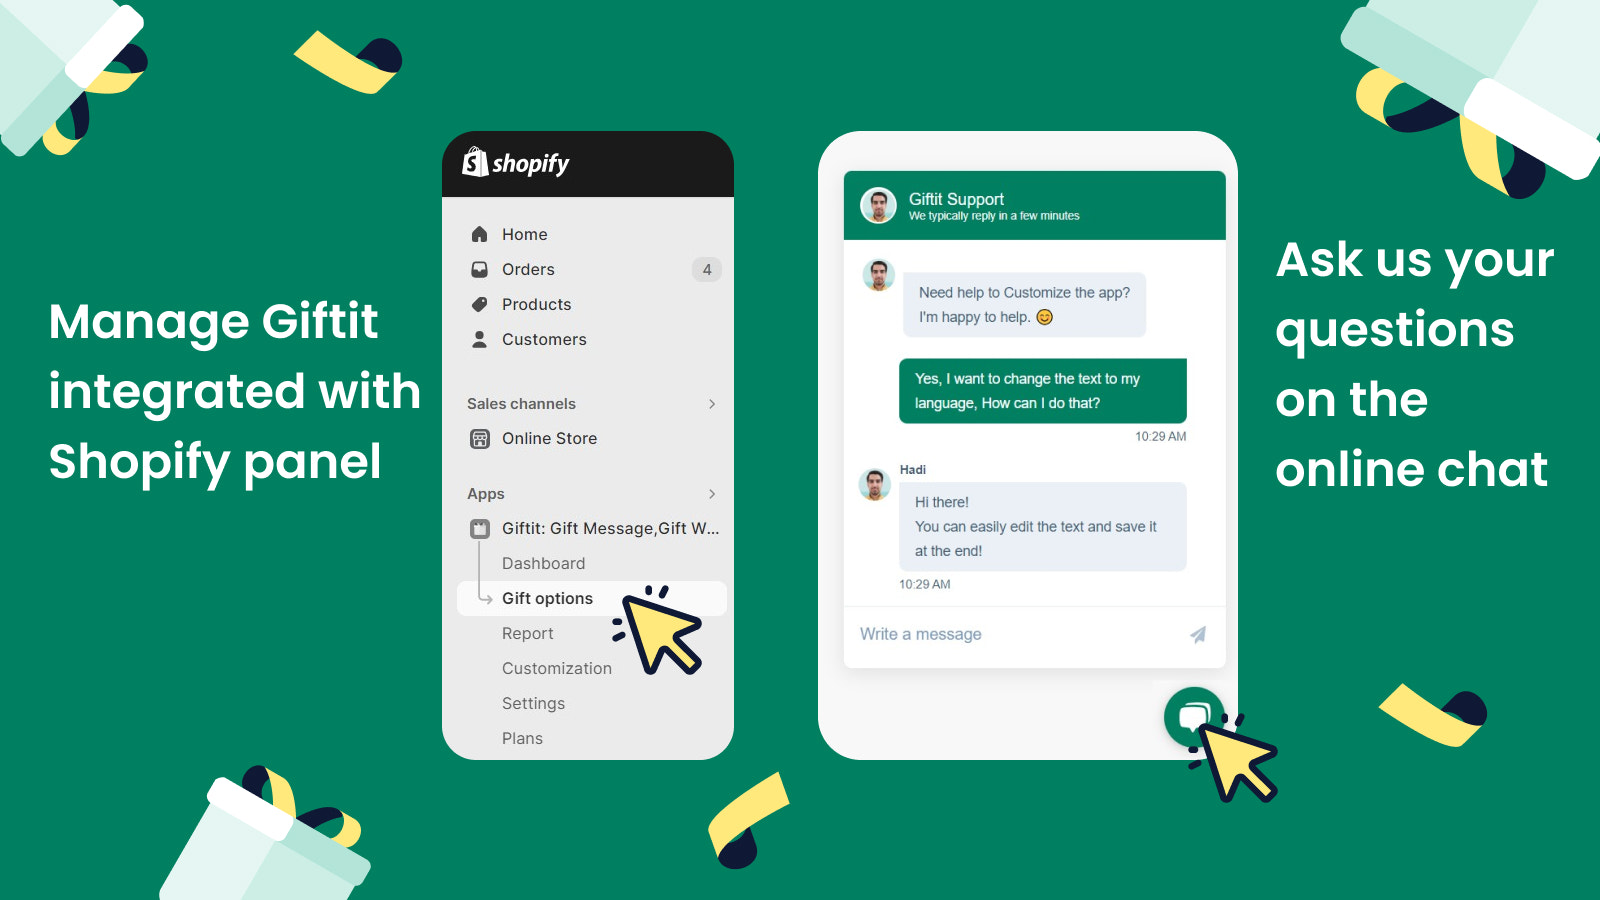 ¡Disfruta de una aplicación integrada a Shopify y soporte 24/7! 